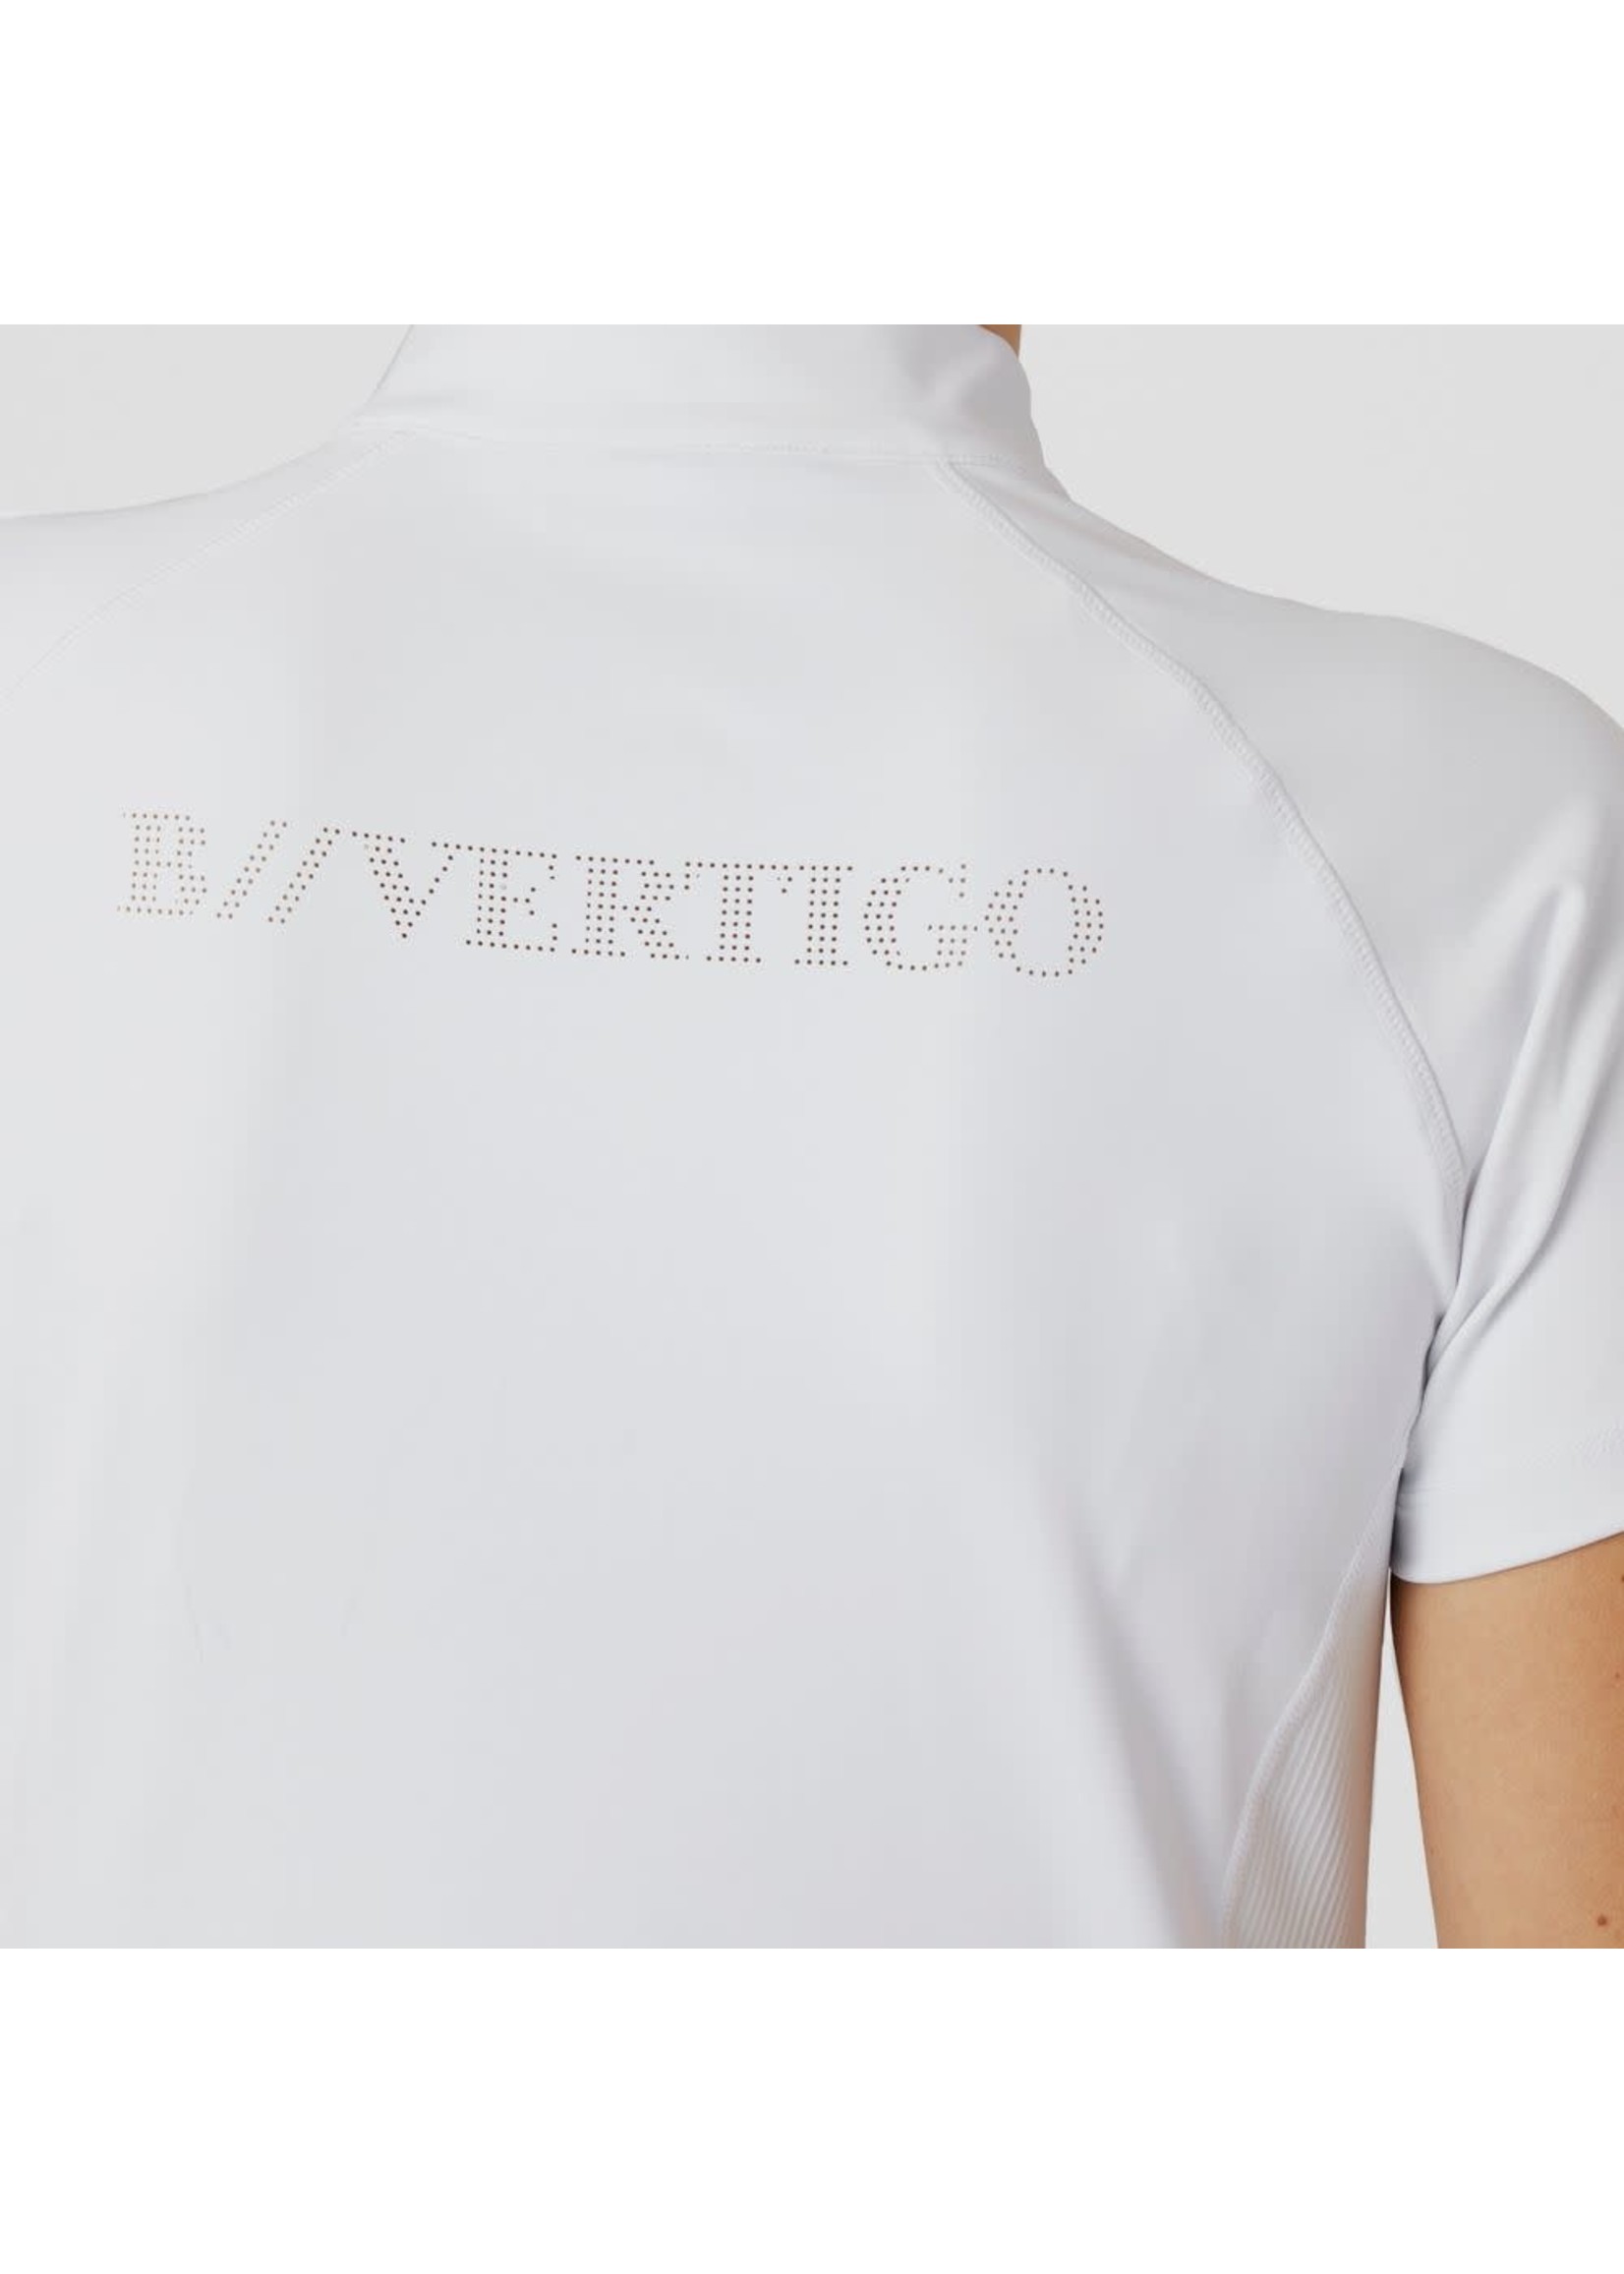 B-Vertigo B Vertigo Adara Women's Cool Tech Training Shirt